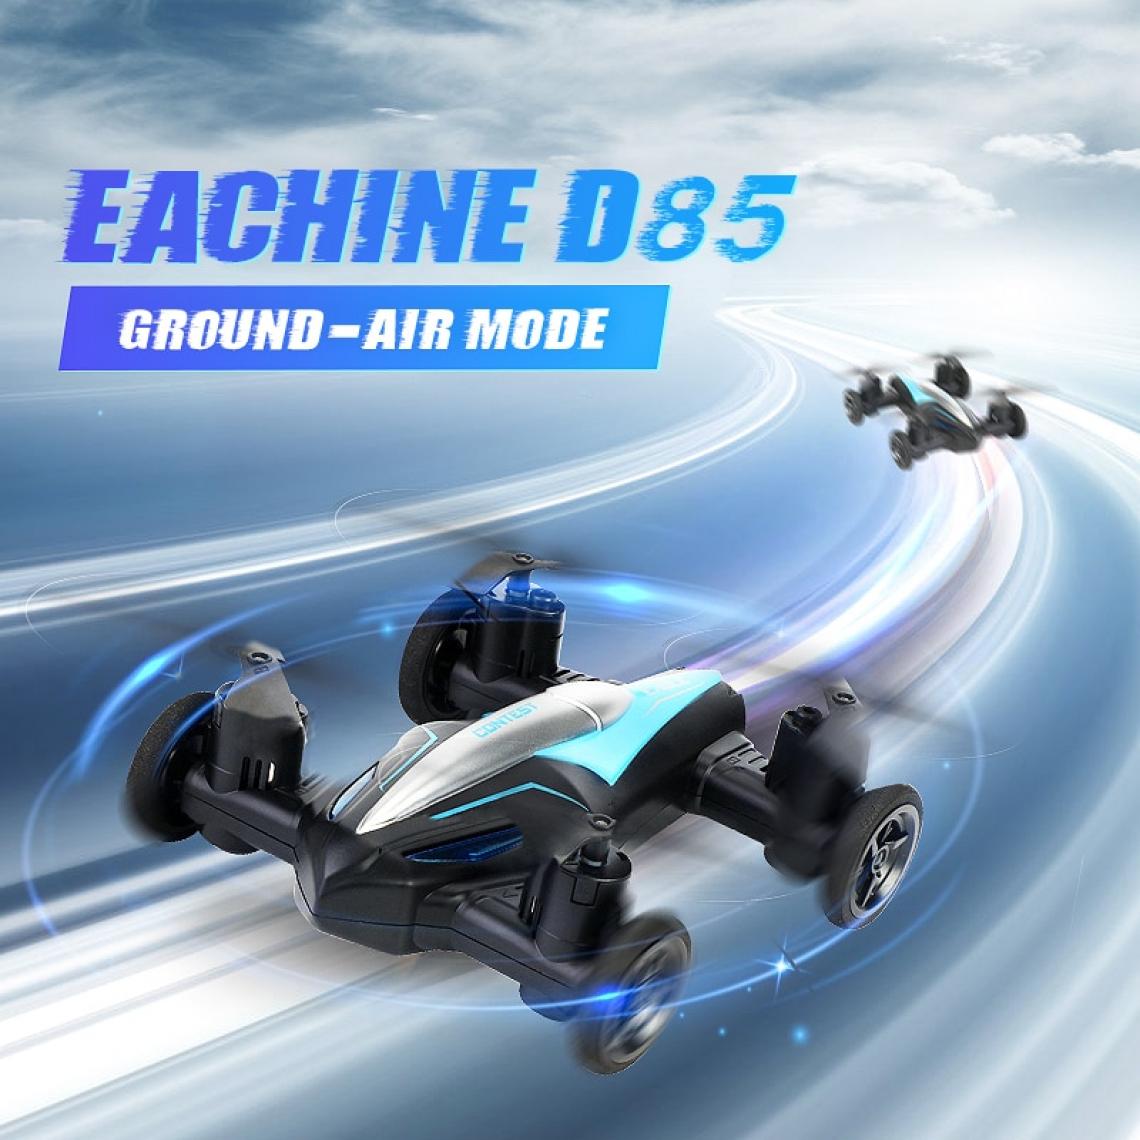 Universal - D85 2 dans 1 drone air-sol voiture 2.4G double mode course mini drone professionnel RC voiture quadricoptère jouets inutiles pour les enfants(Bleu) - Drone